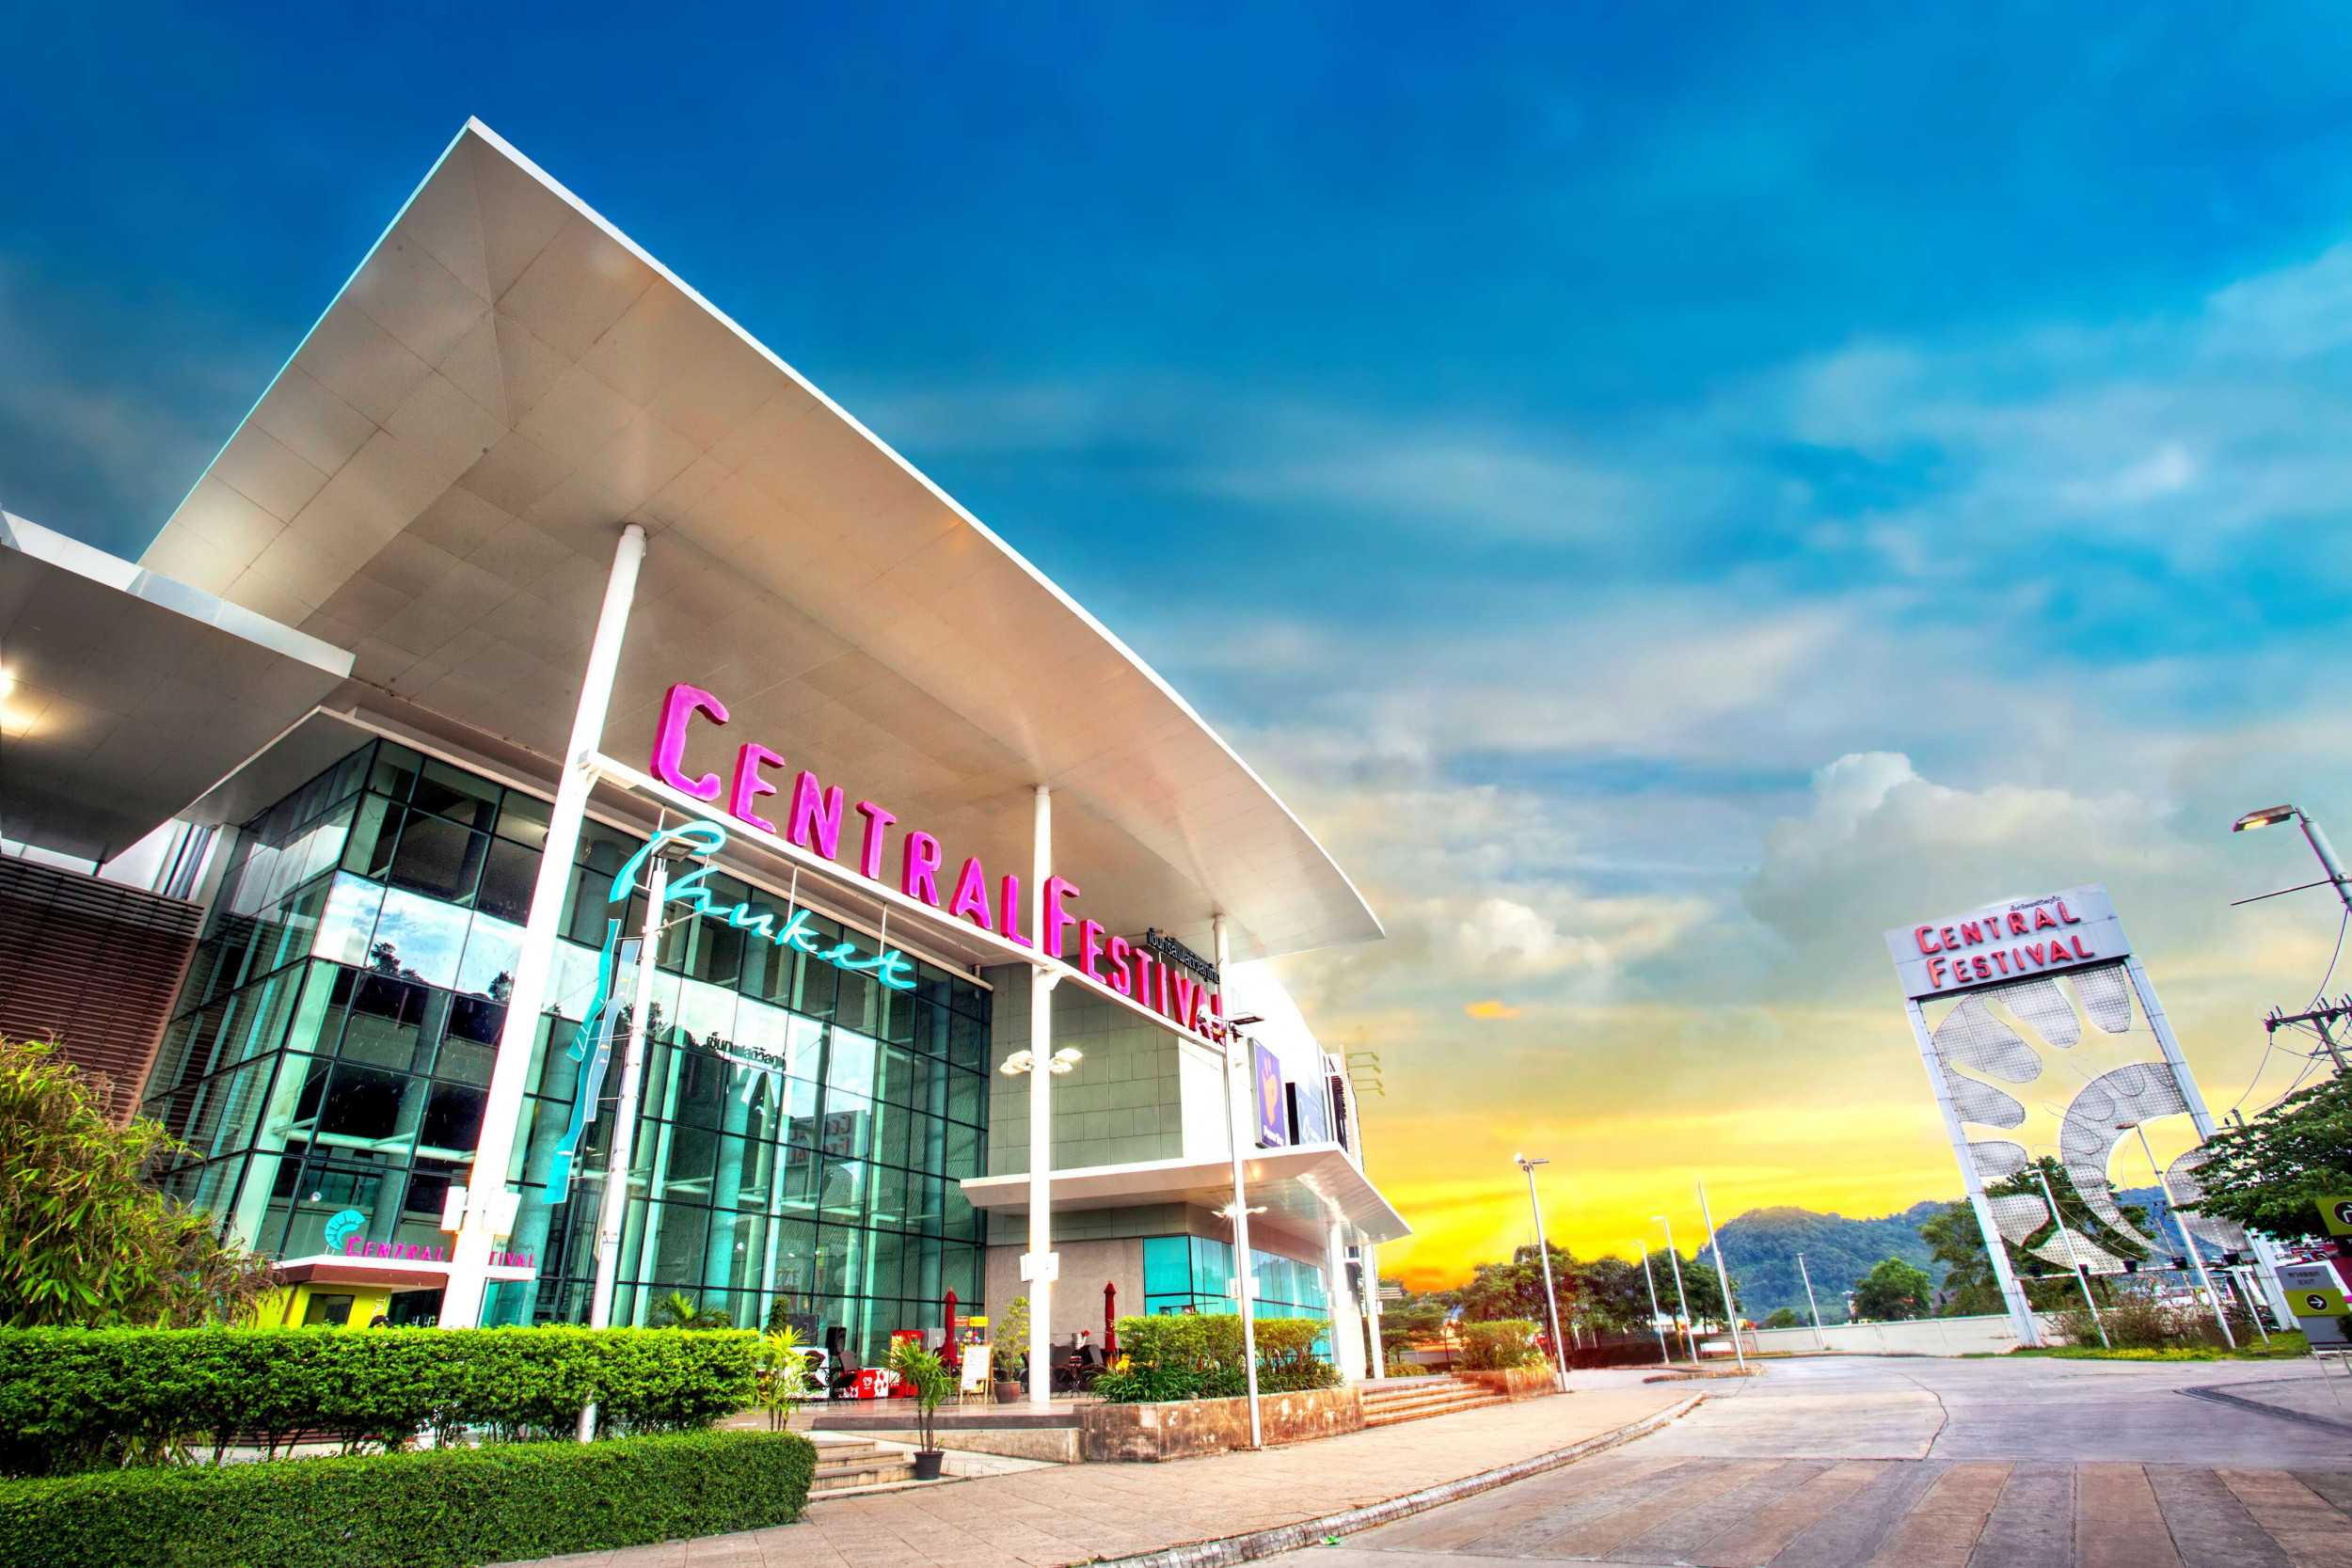 Торговый центр централ пхукет (central phuket): флореста и фестиваль, часы работы, как добраться - 2022